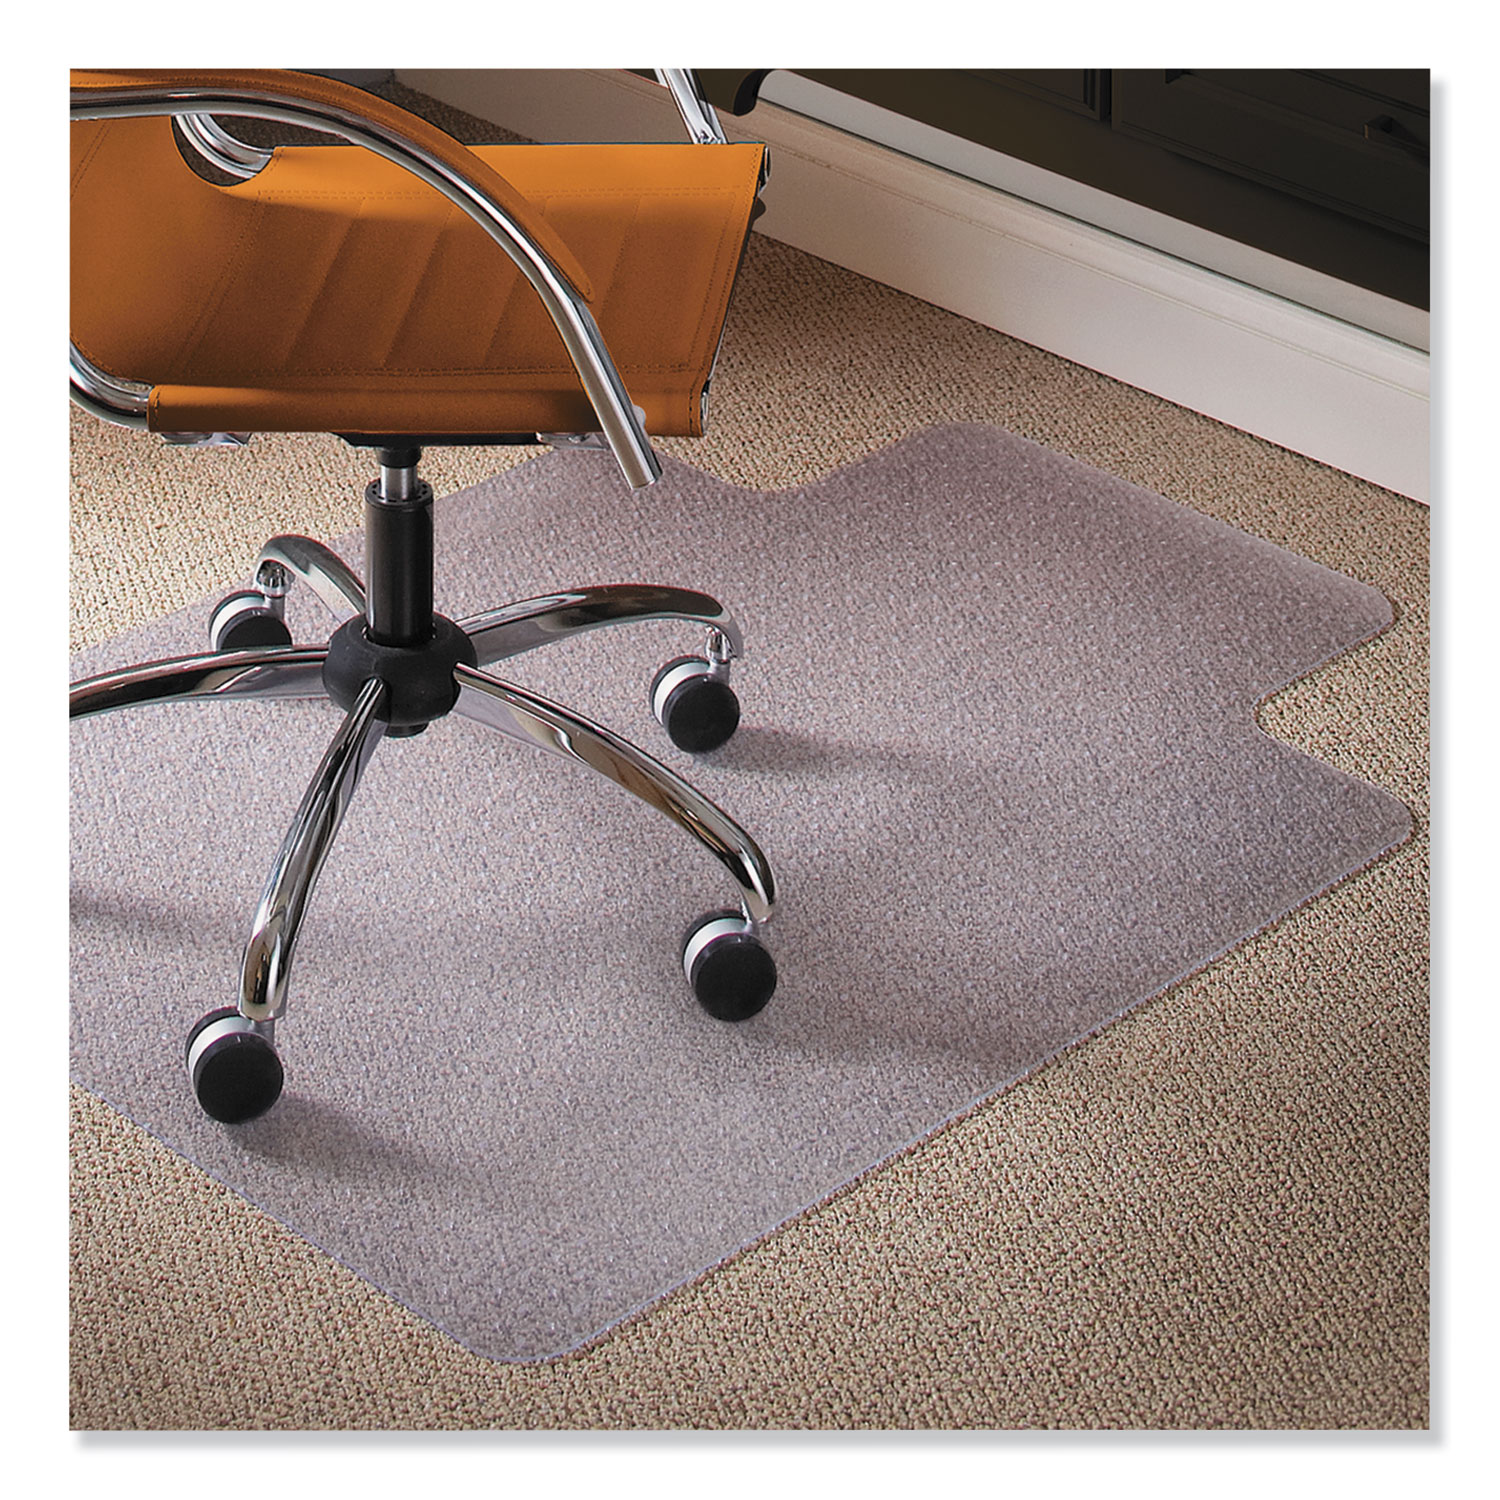  ES Robbins 141032 Natural Origins Chair Mat with Lip For Carpet, 36 x 48, Clear (ESR141032) 